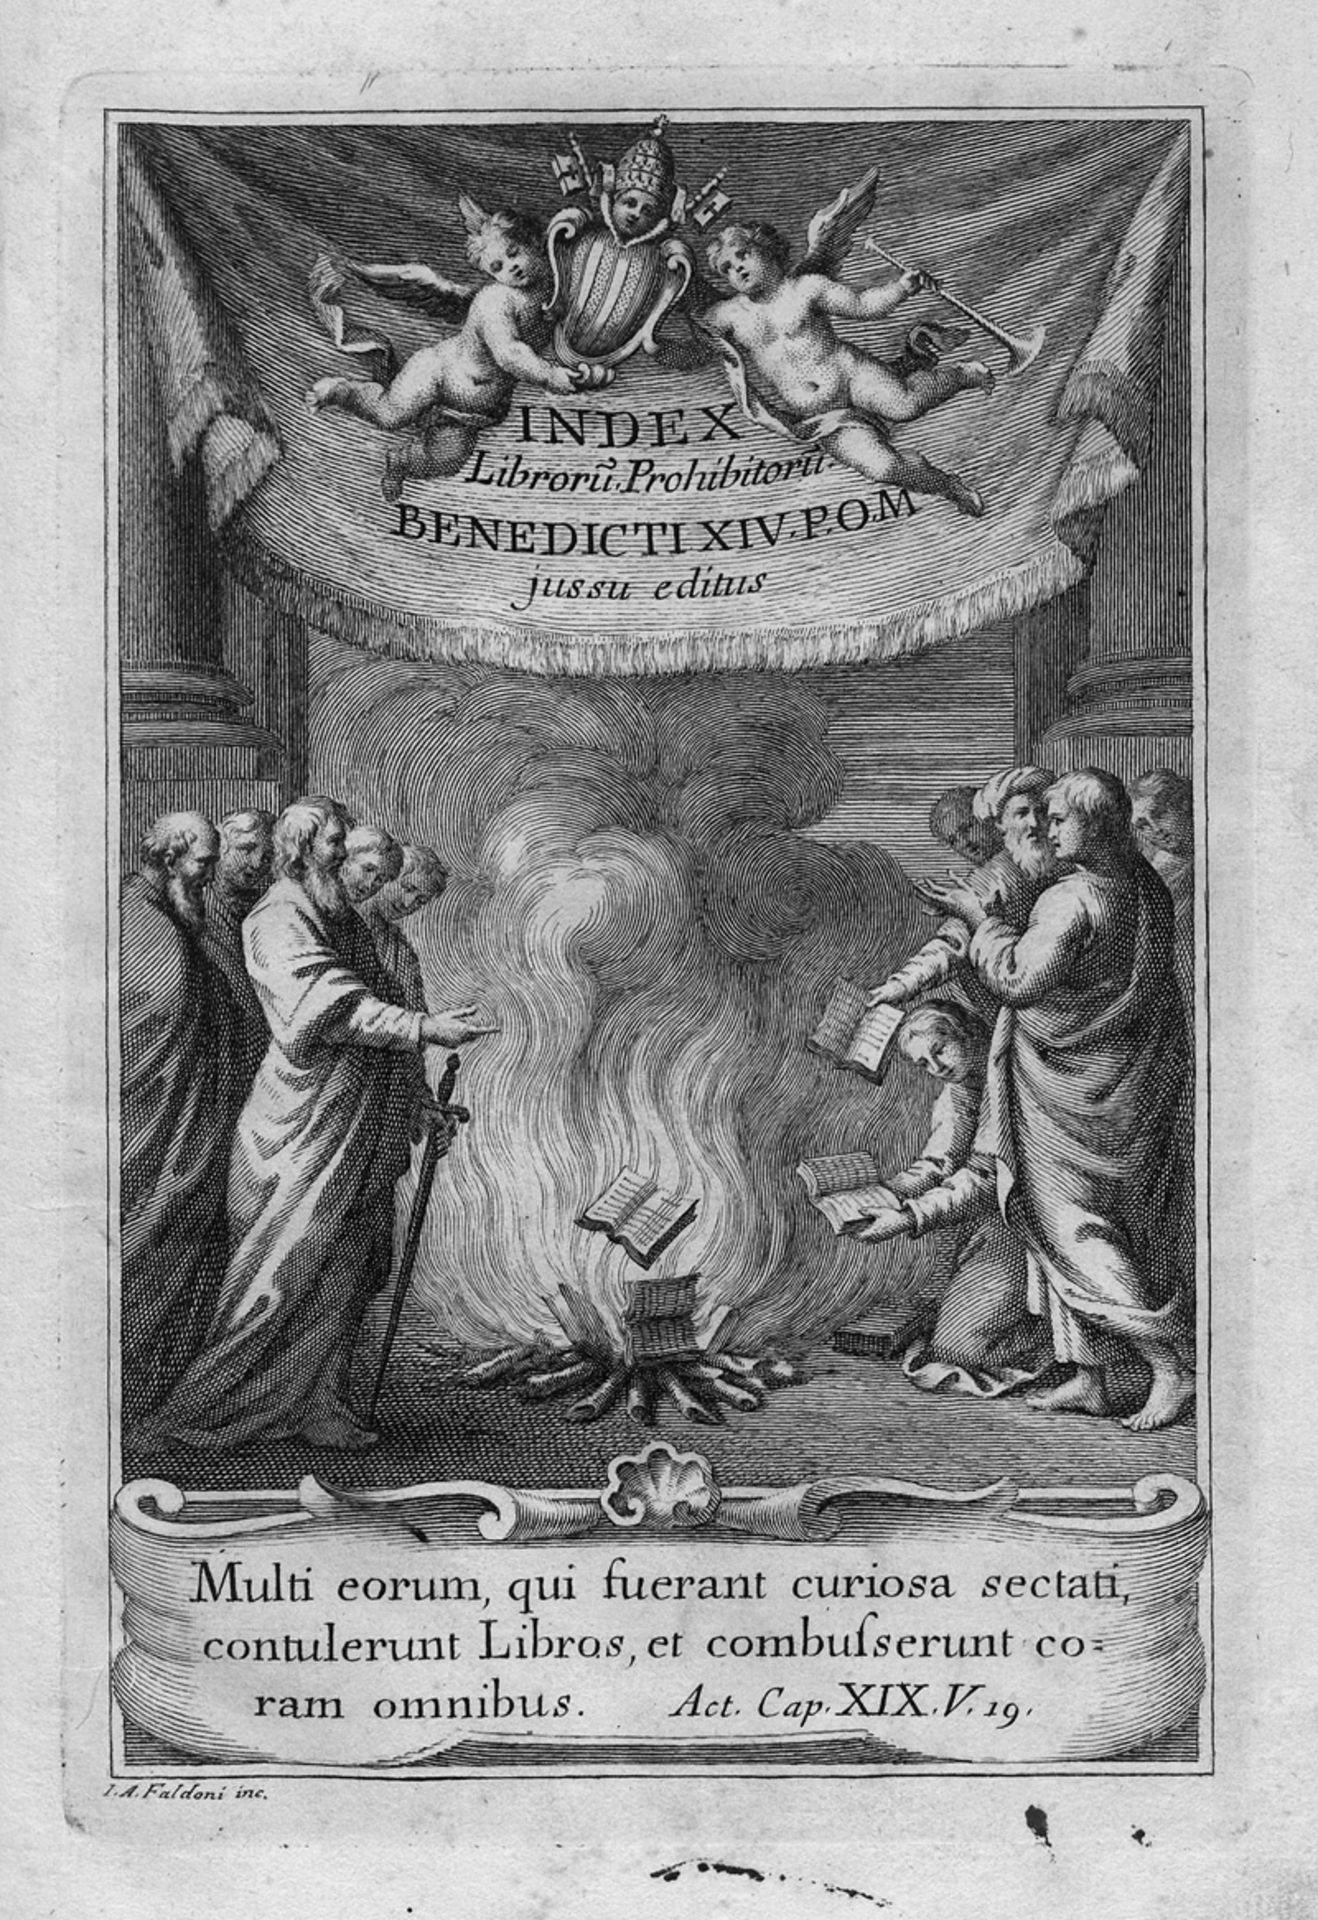 Index librorum prohibitorum: sanctissimi domini nostri Benedicti XIV